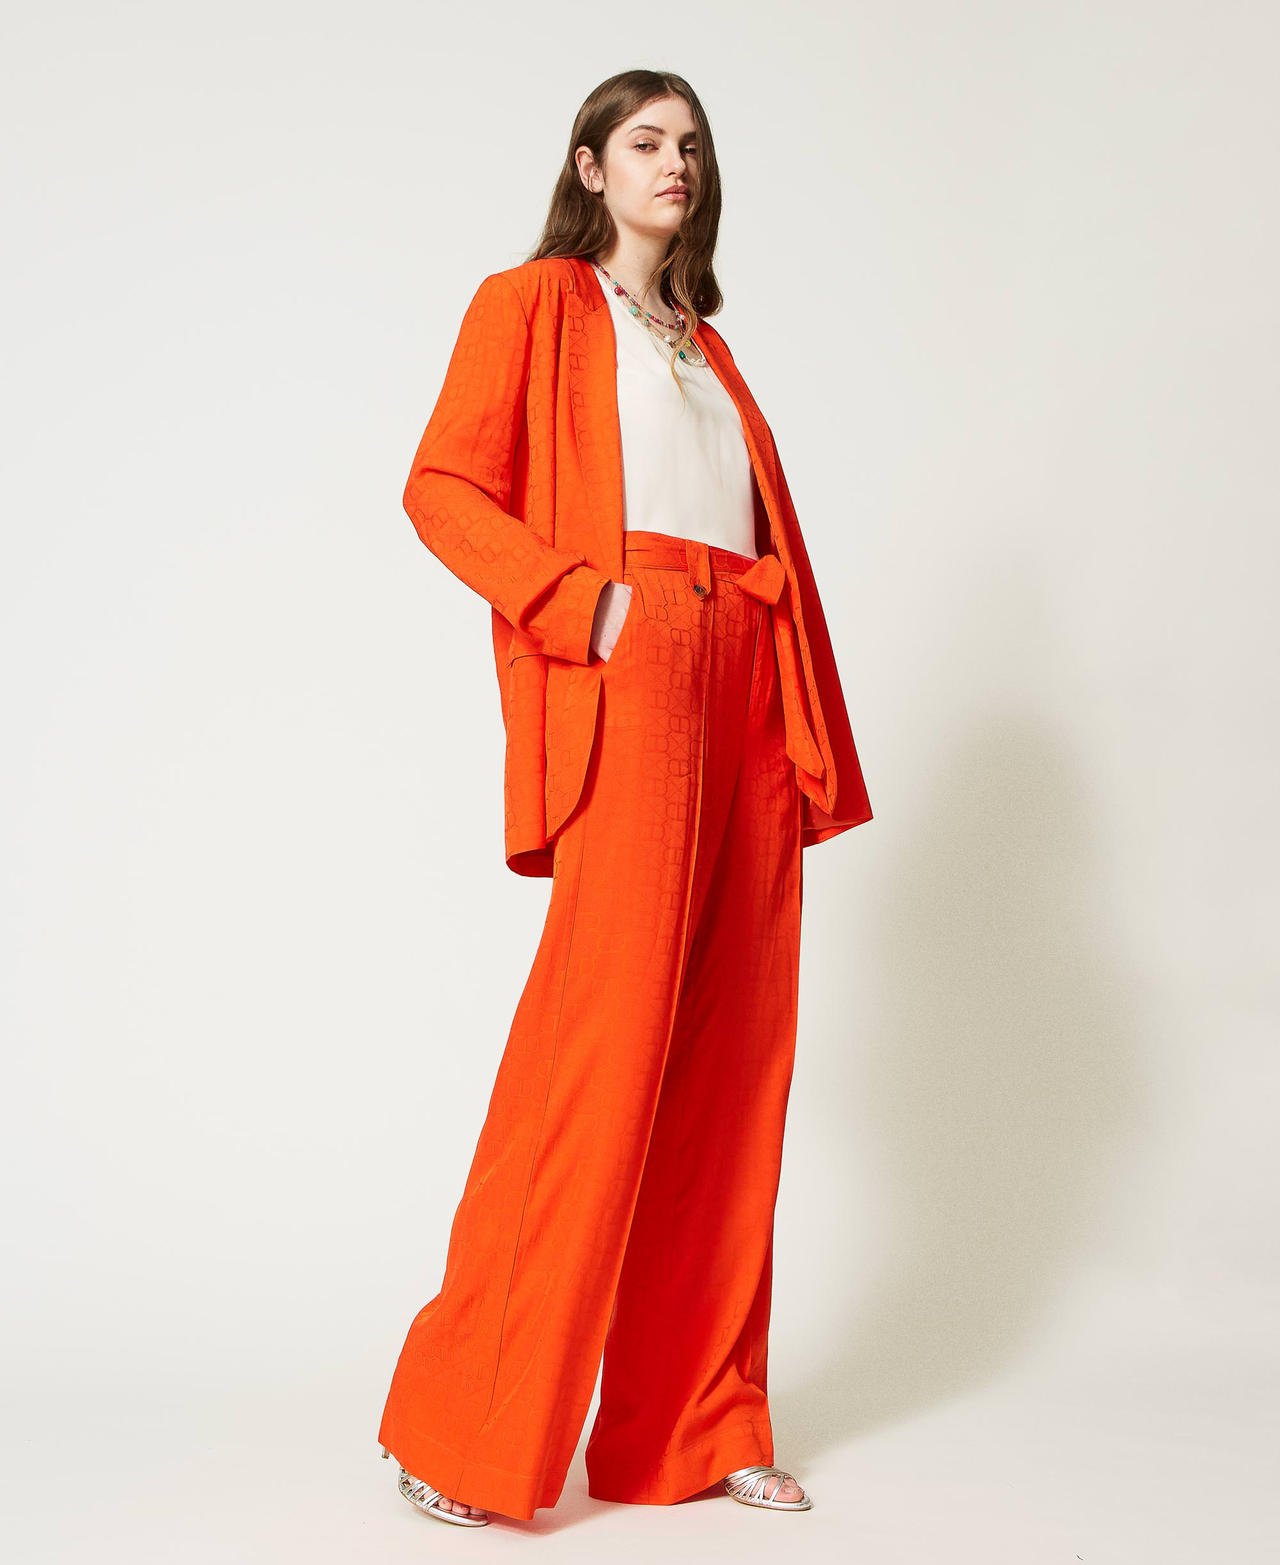 Pantalon palazzo avec Oval T jacquard Orange « Orange Sun » Femme 231TT2143-02